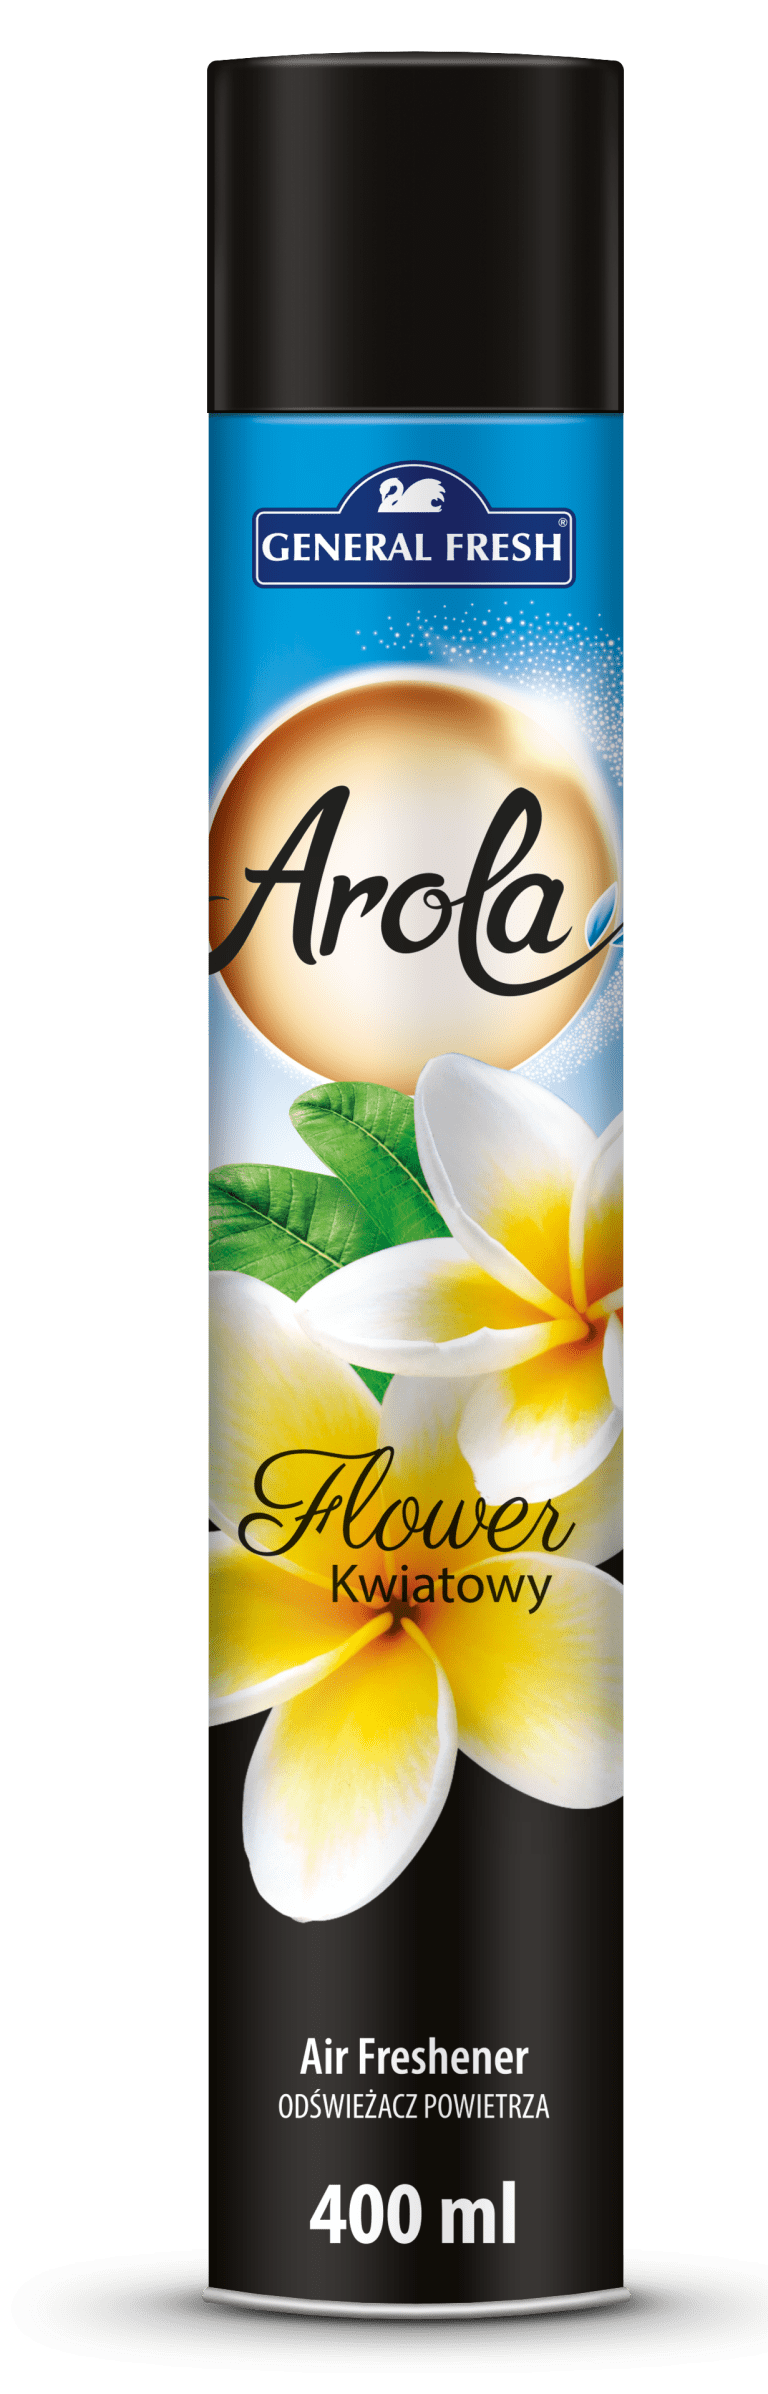 gf-arola-aerozol-kwiatowy-400ml_6123.png